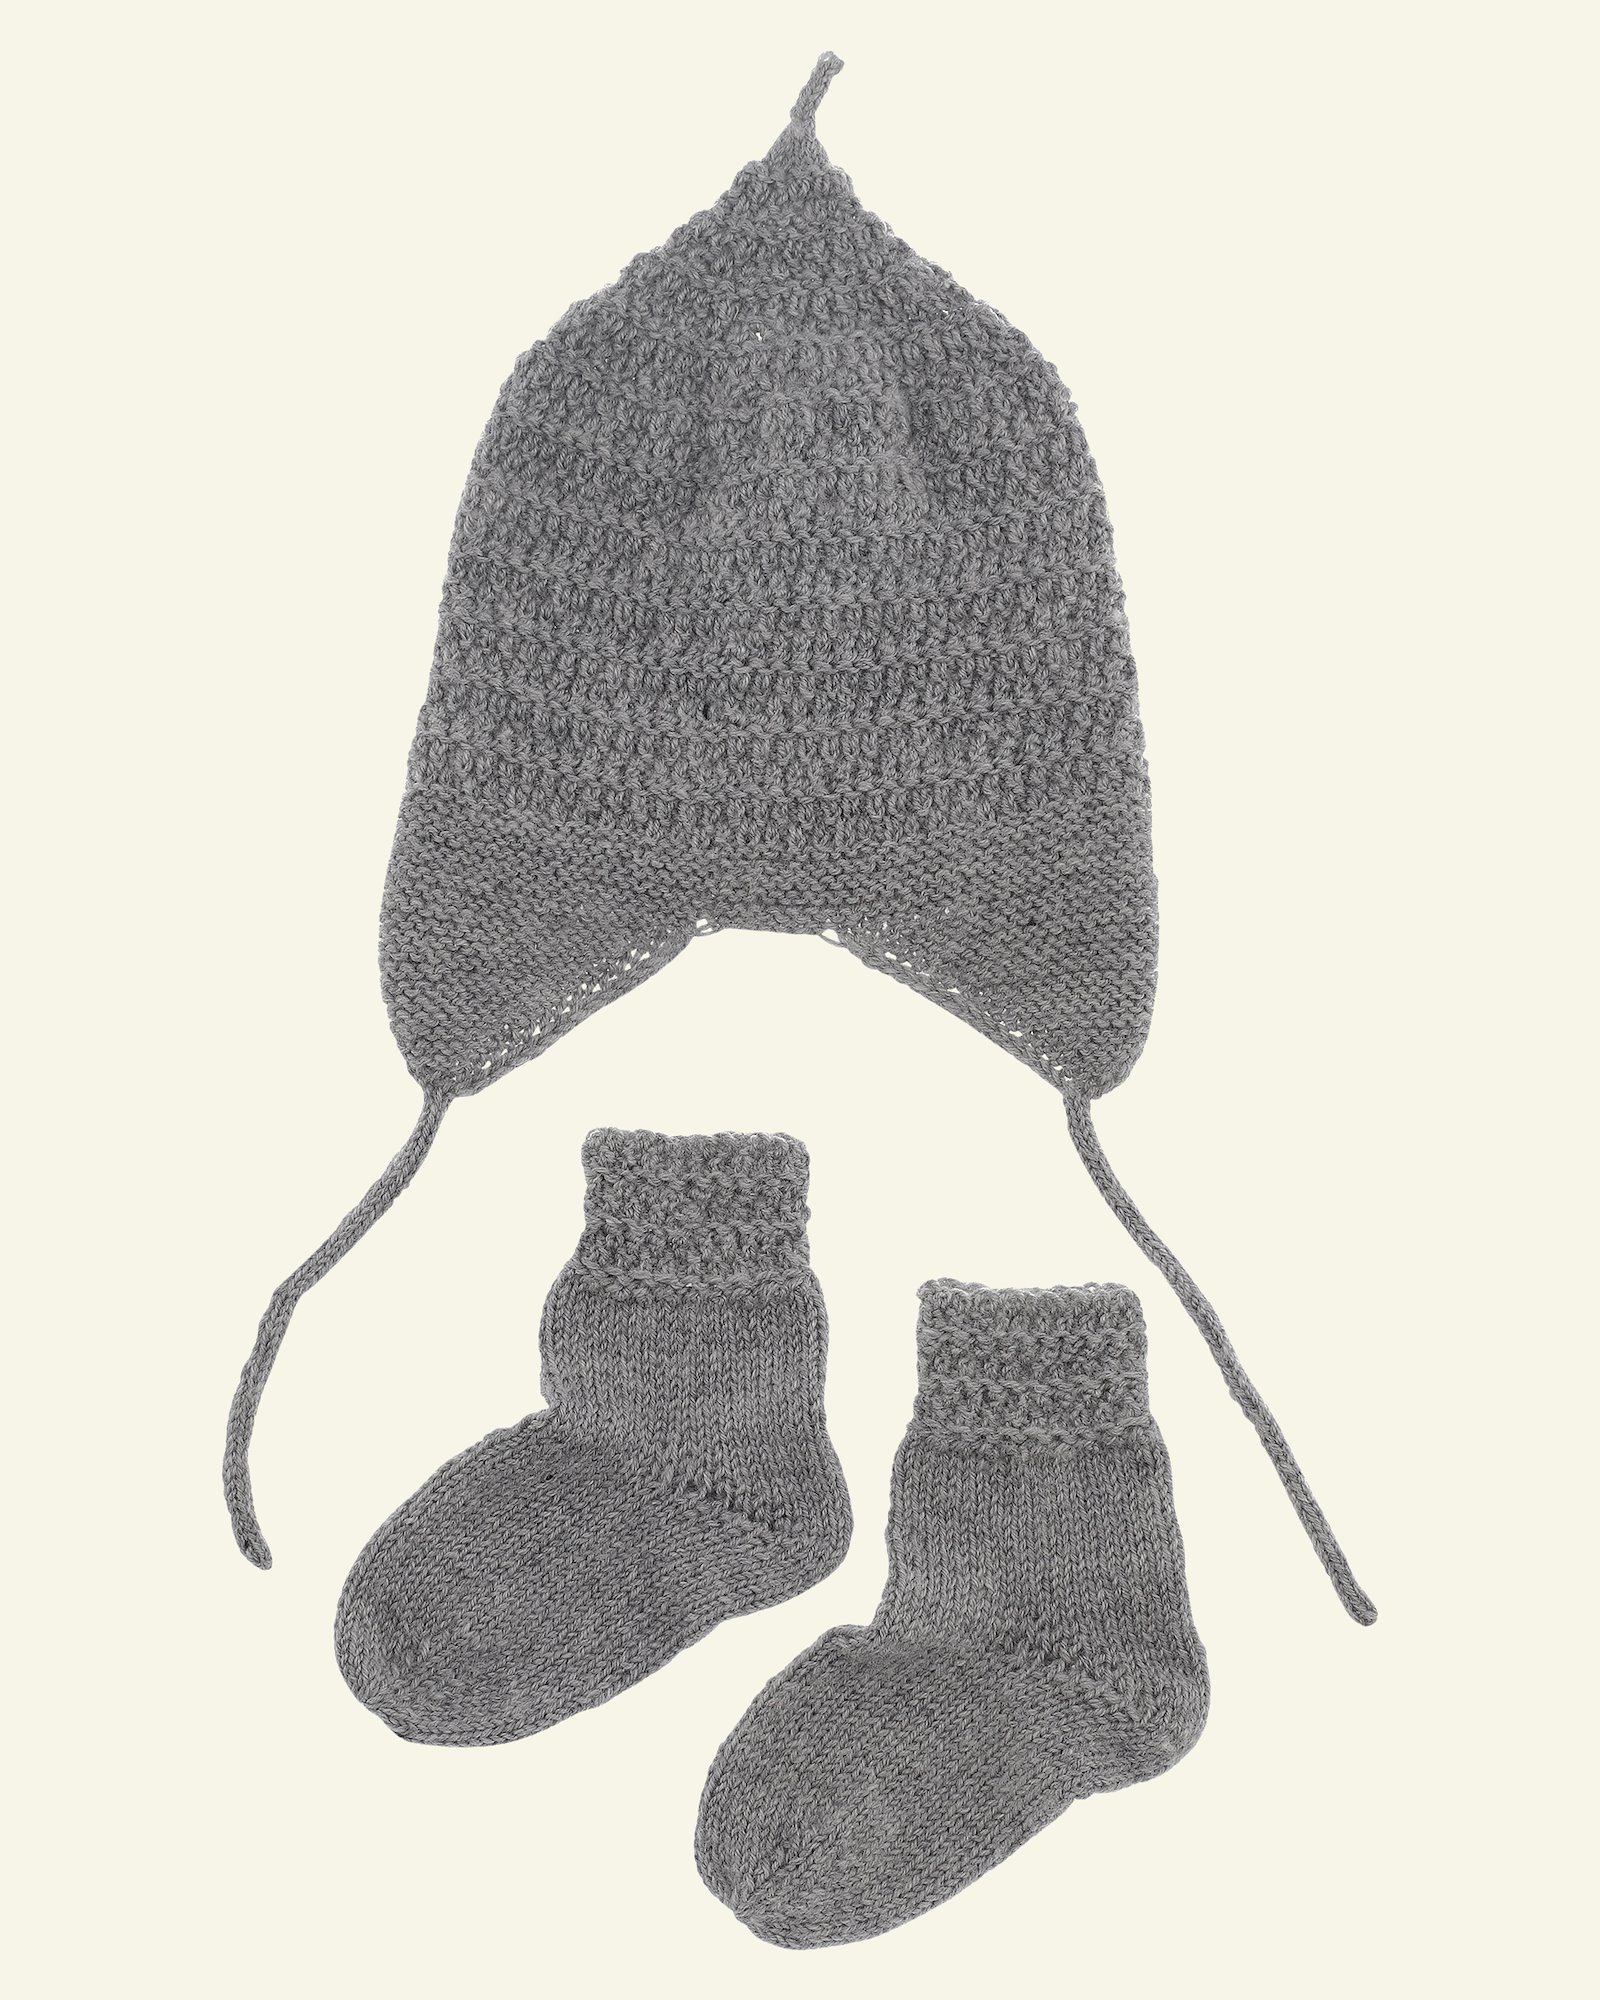 FRAYA strikkeoppskrift – Oh so snug baby hat and socks - Delicate FRAYA3045_image.png